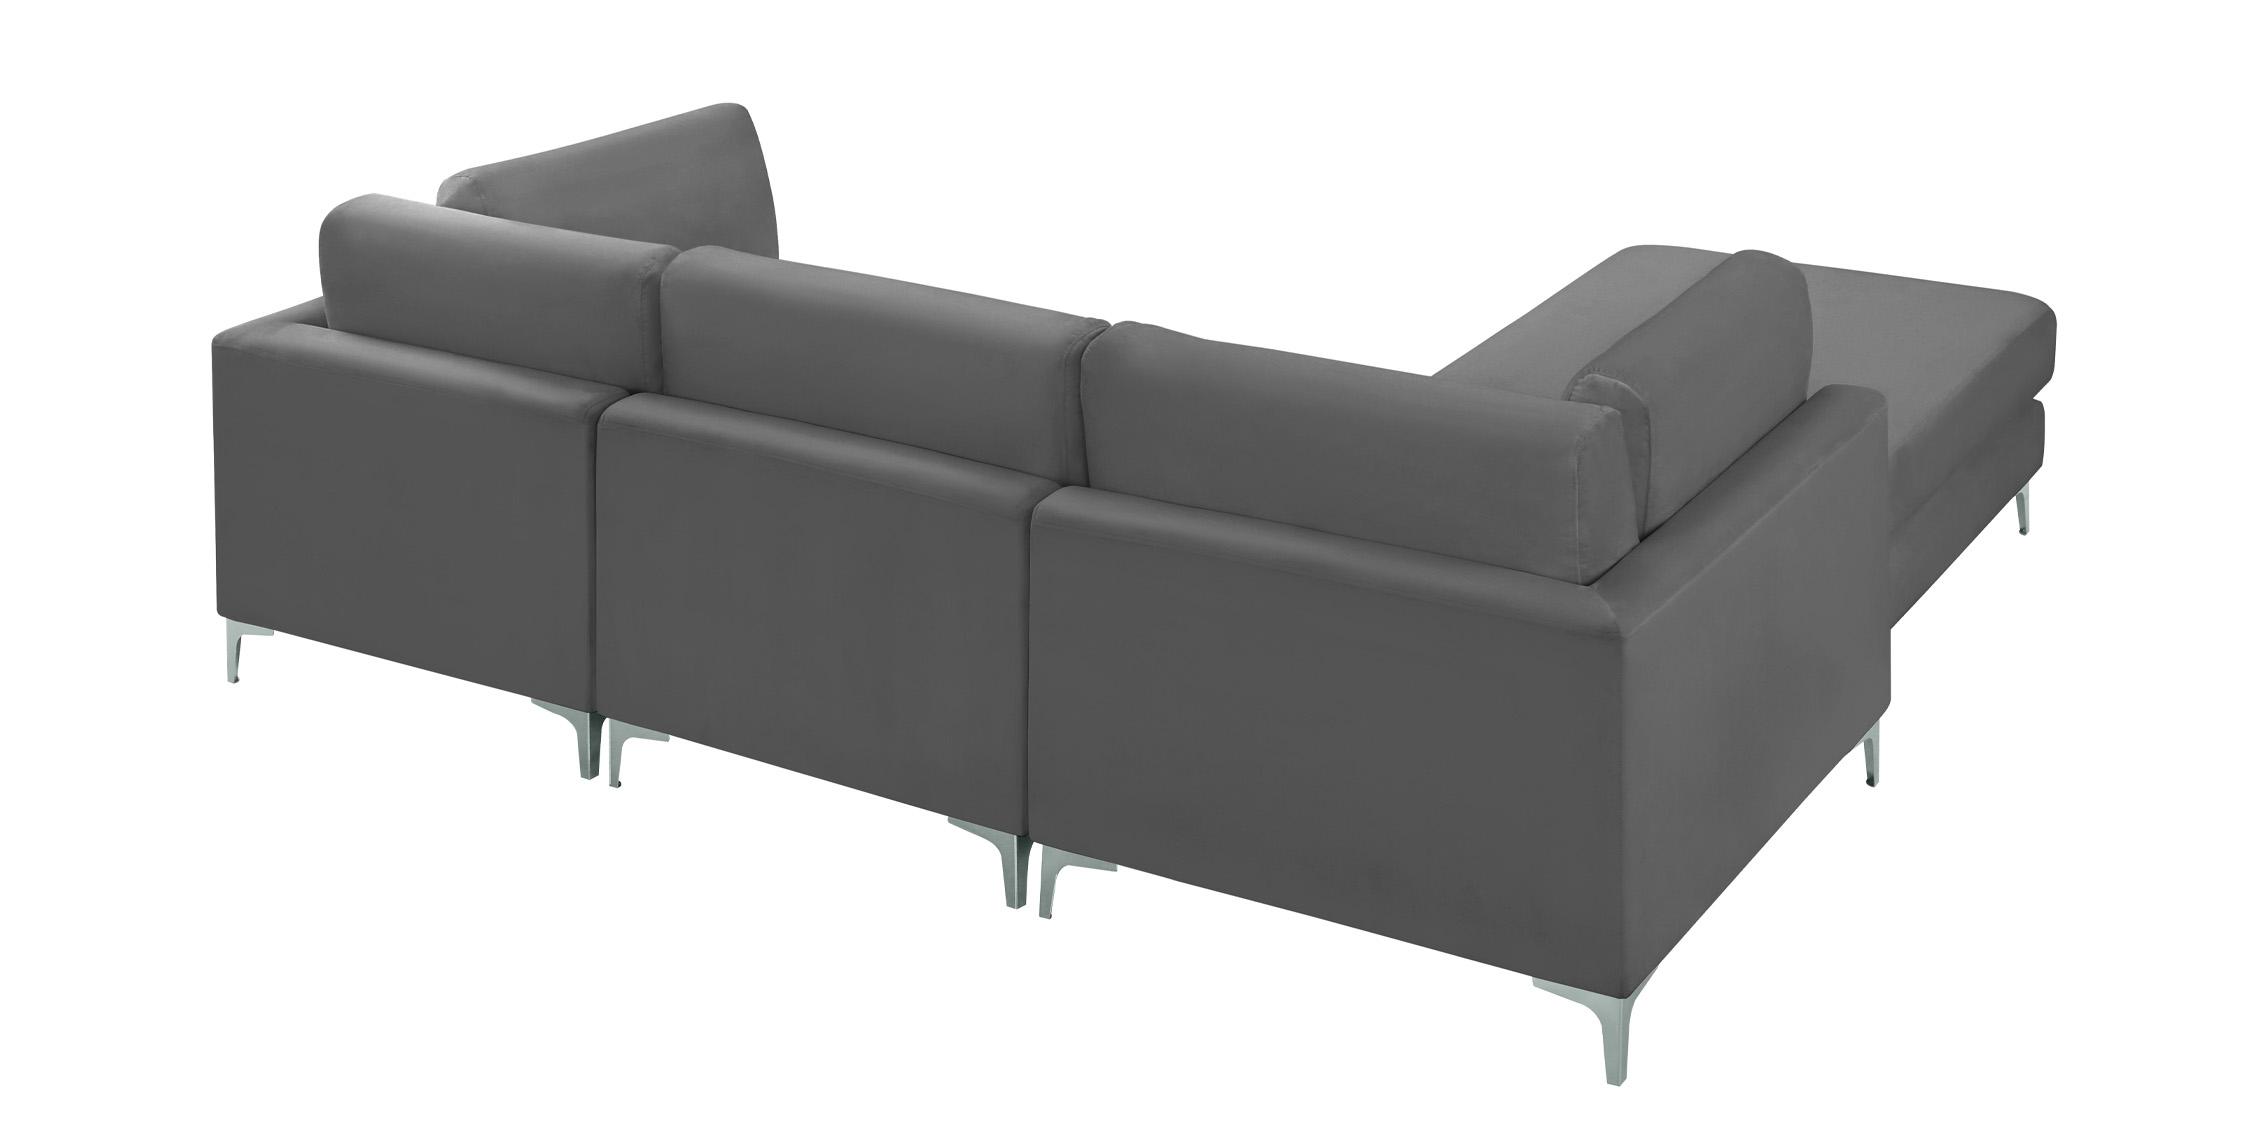 

    
605Grey-Sec4A Meridian Furniture Modular Sectional Sofa
